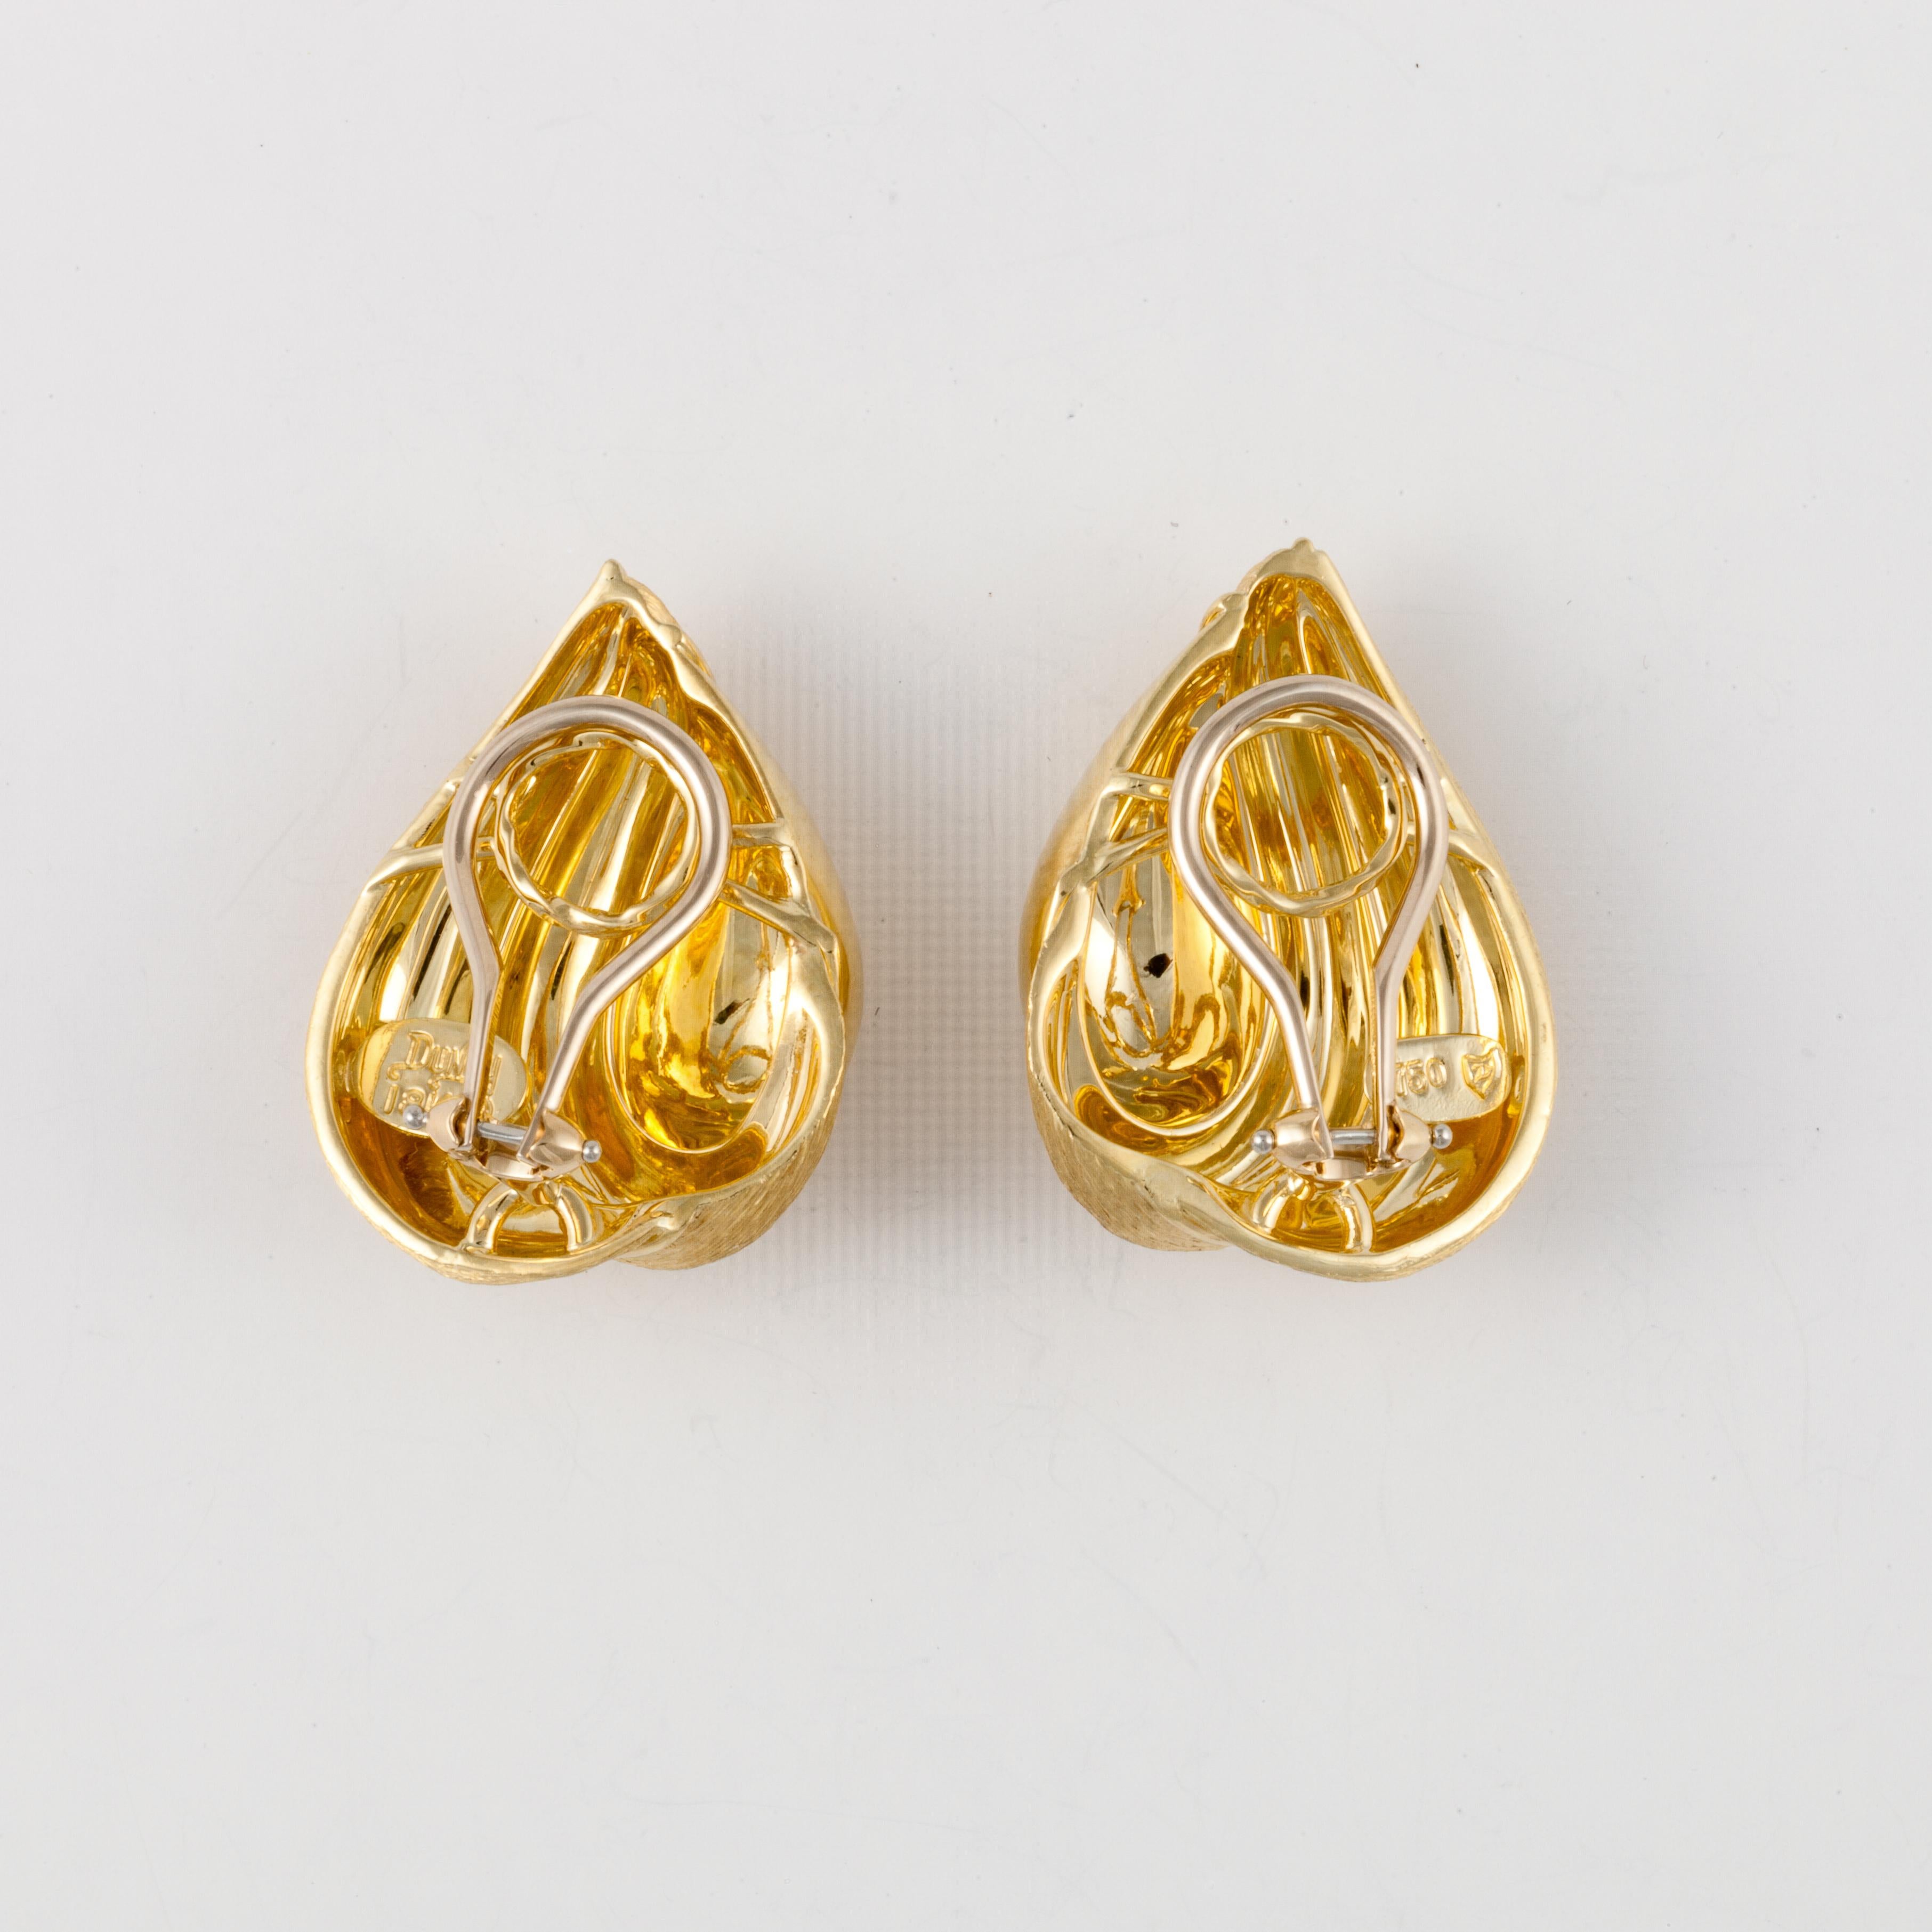 2gm gold earrings